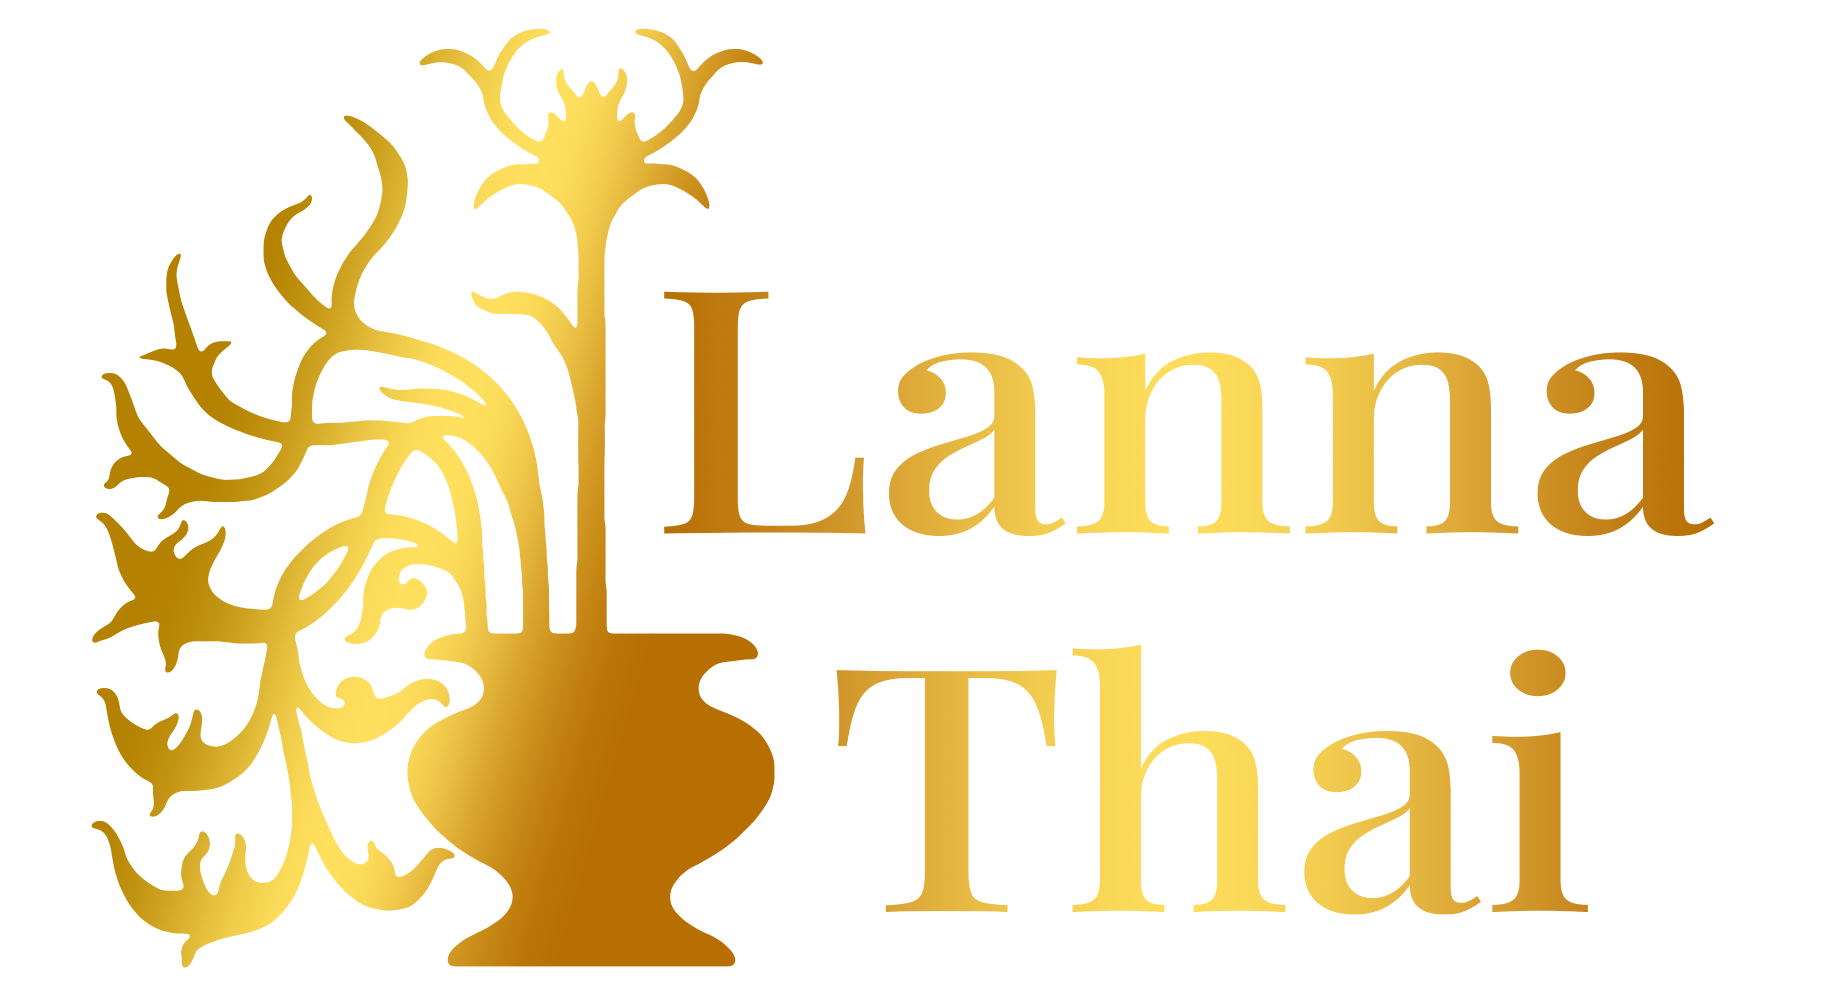 Lanna Thai